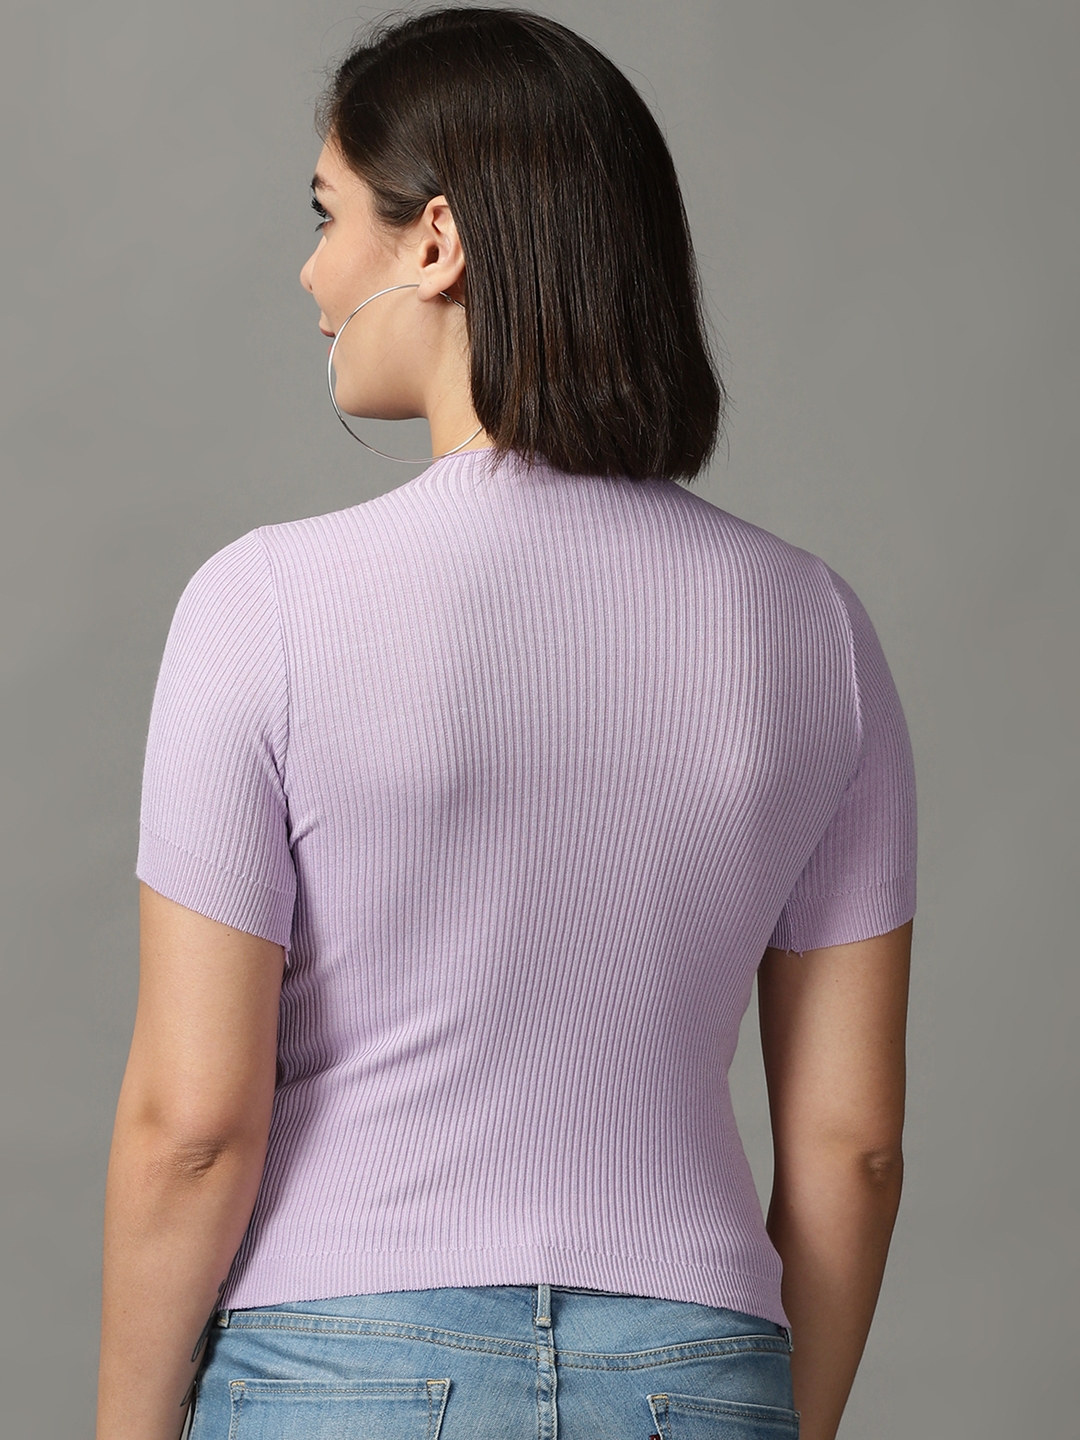 Women's Purple Cotton Blend Solid Tops